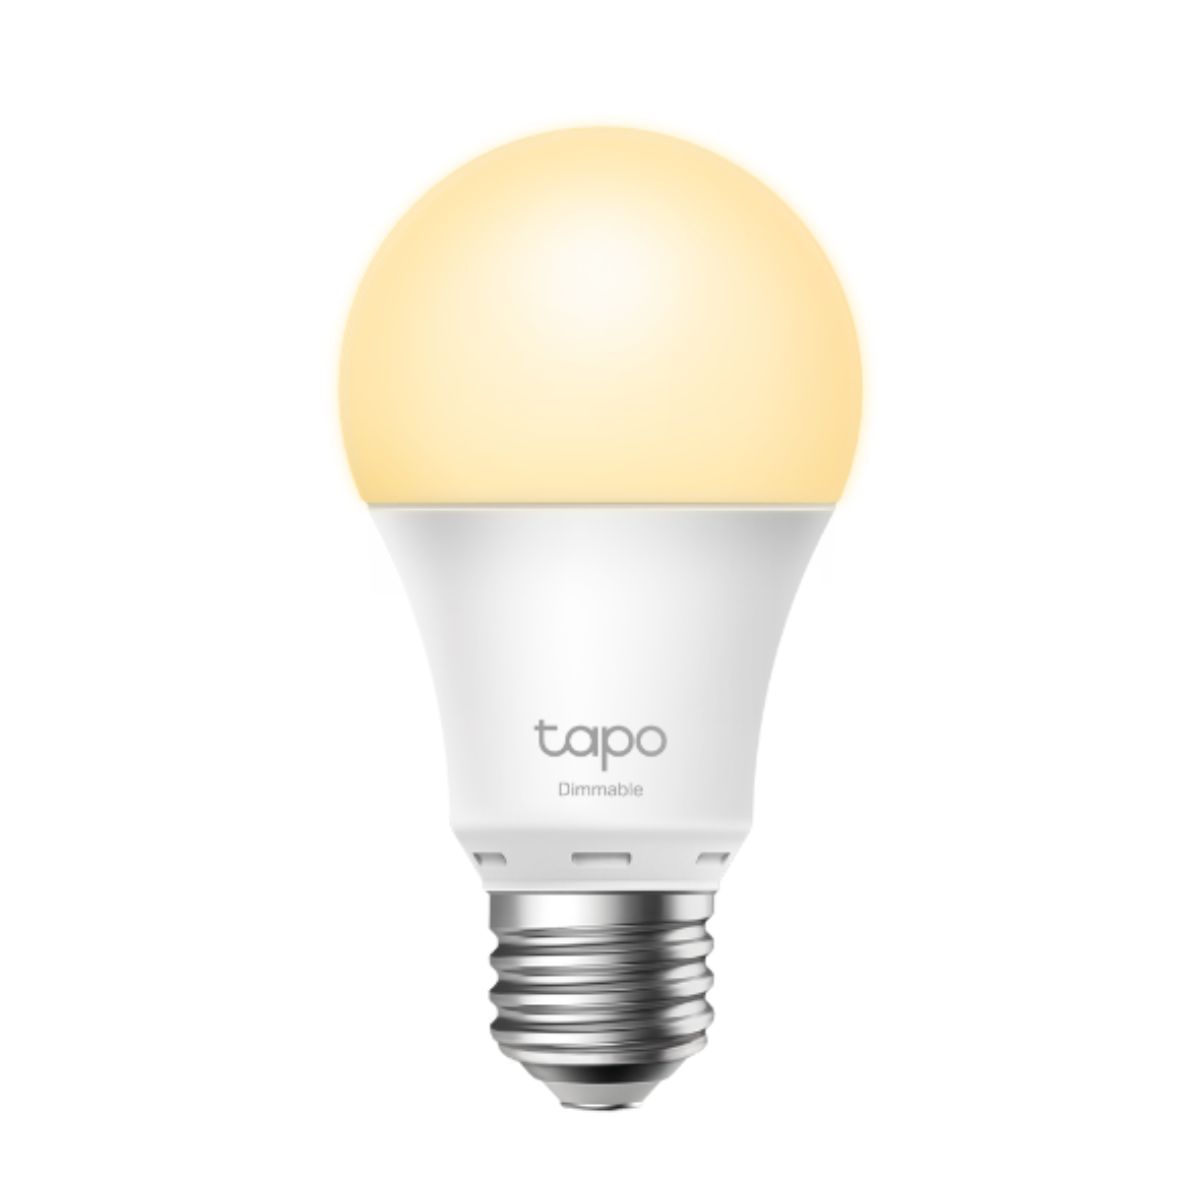 Bóng đèn wifi TP-Link Tapo L510E điều chỉnh ánh sáng, điều khiển từ xa bằng giọng nói